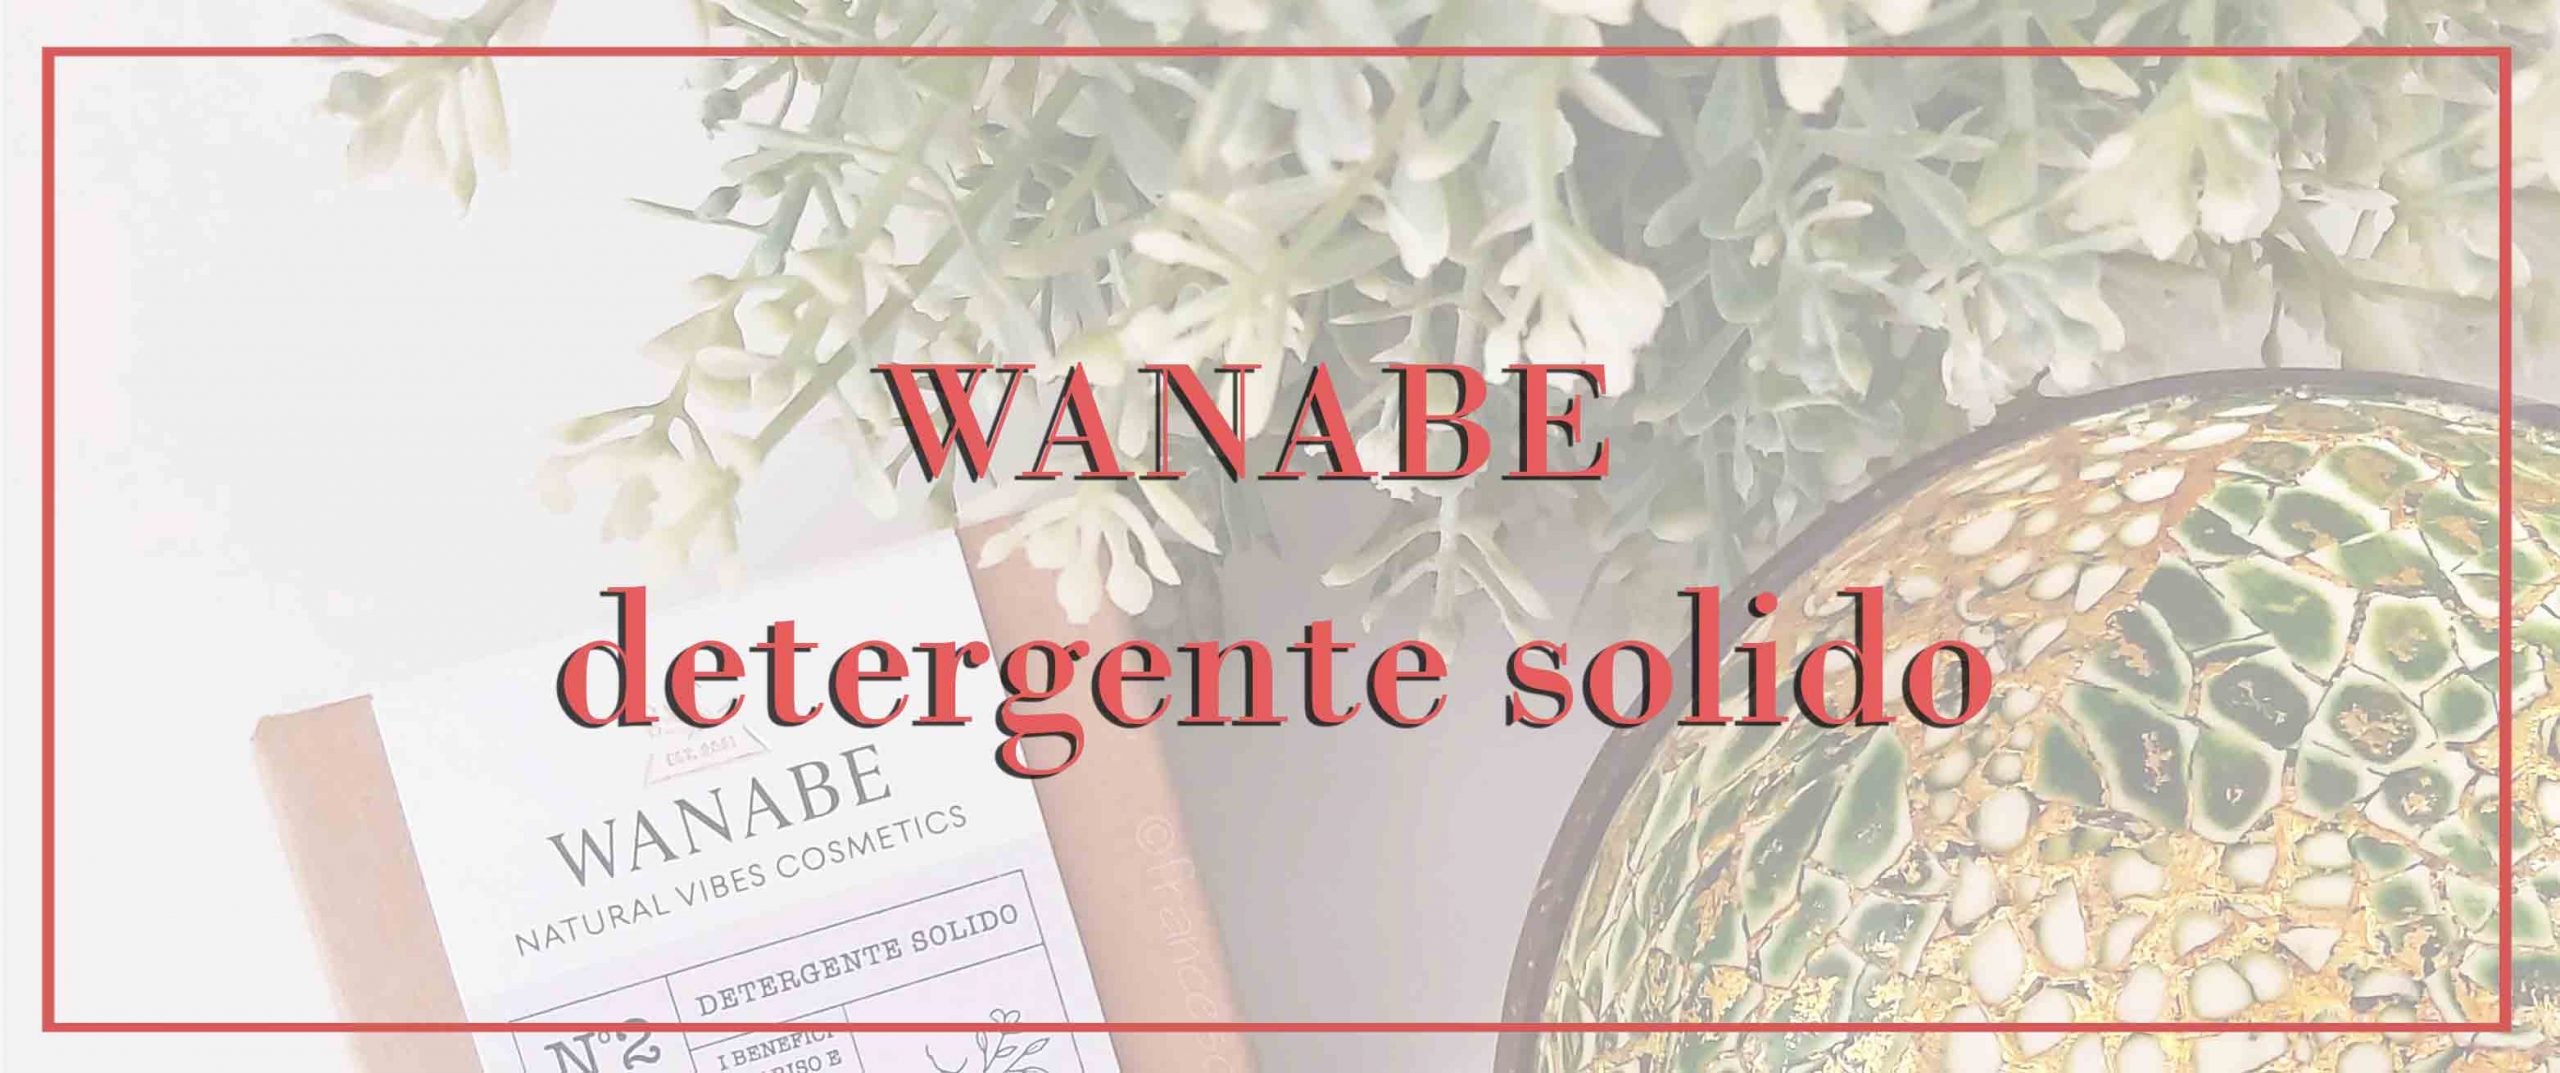 Detergente solido Wanabe